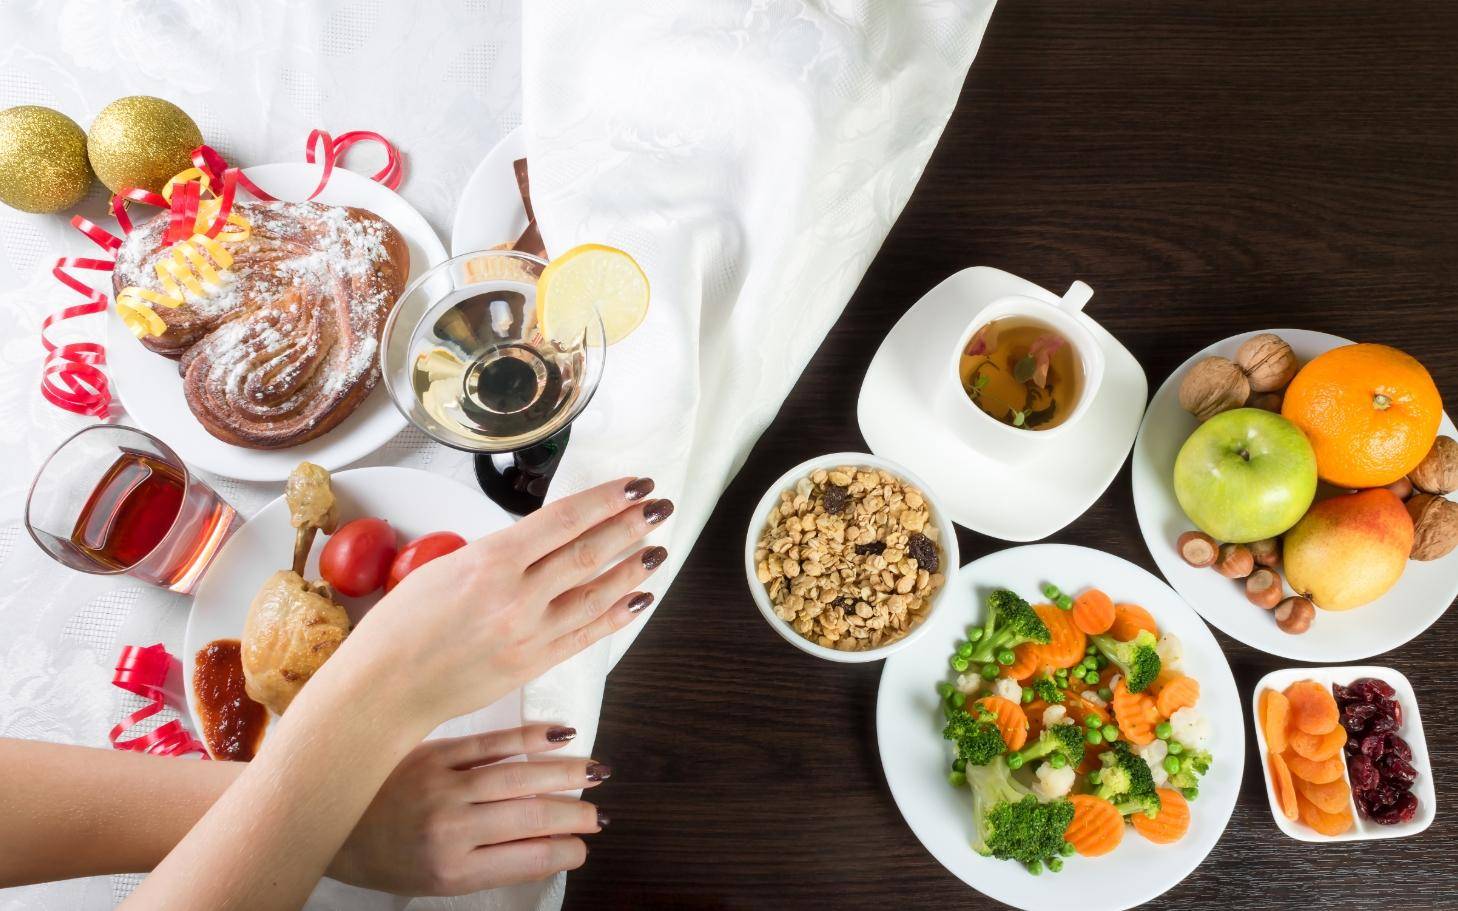 Как быстро похудеть после праздников: как начать правильно питаться после пищевого разгула — щадящая диета